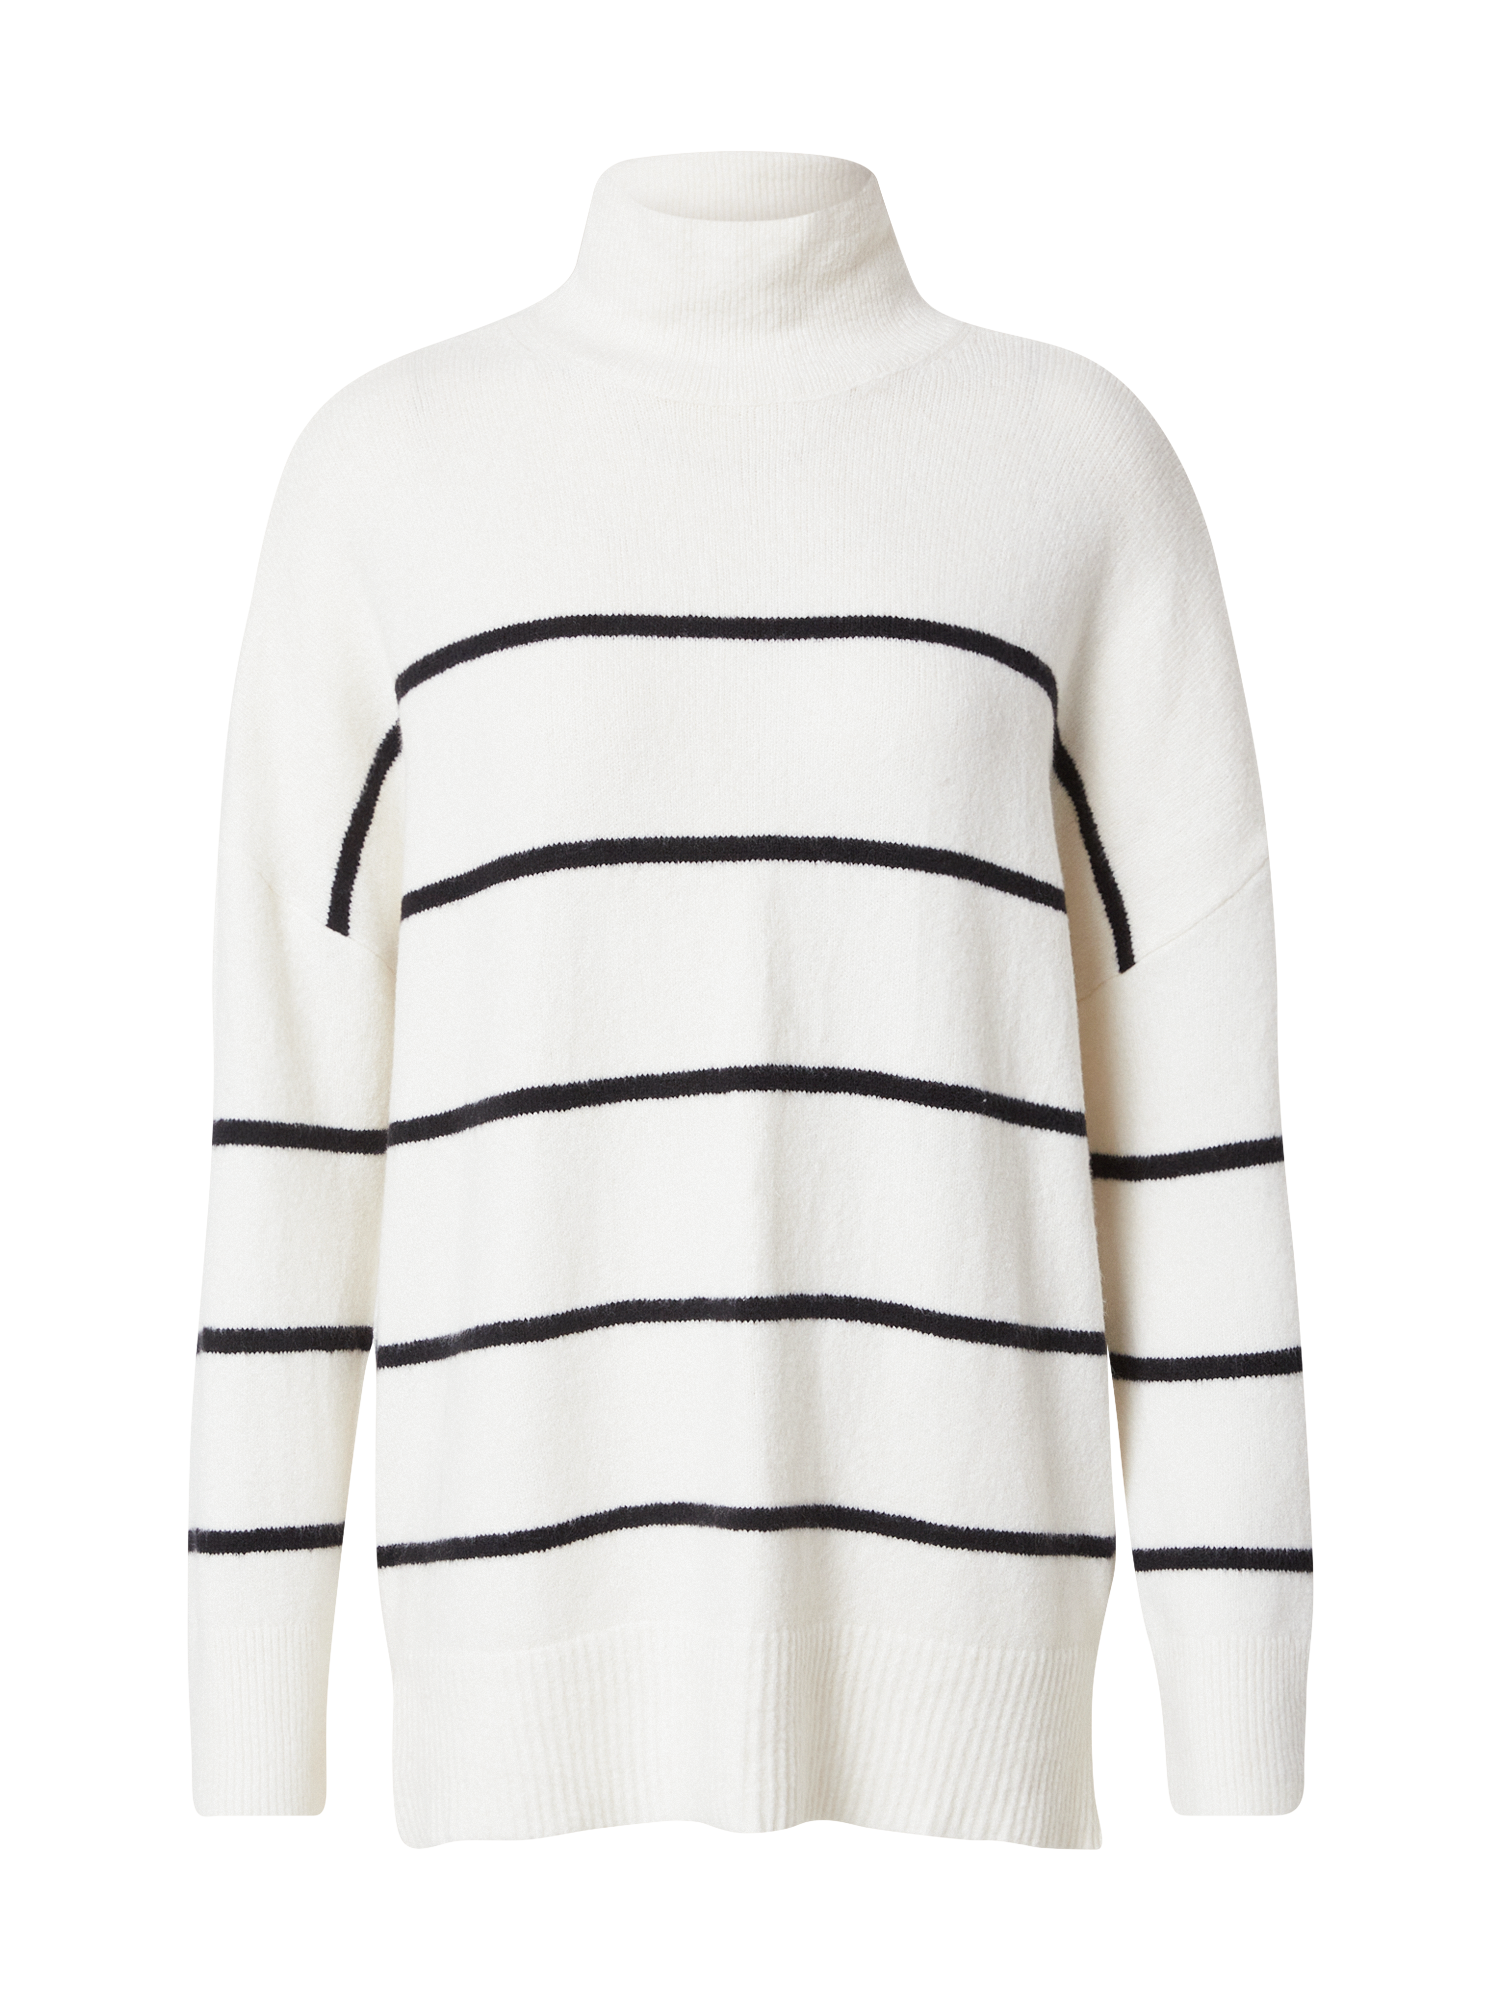 Odzież Kobiety Abercrombie & Fitch Sweter w kolorze Offwhitem 